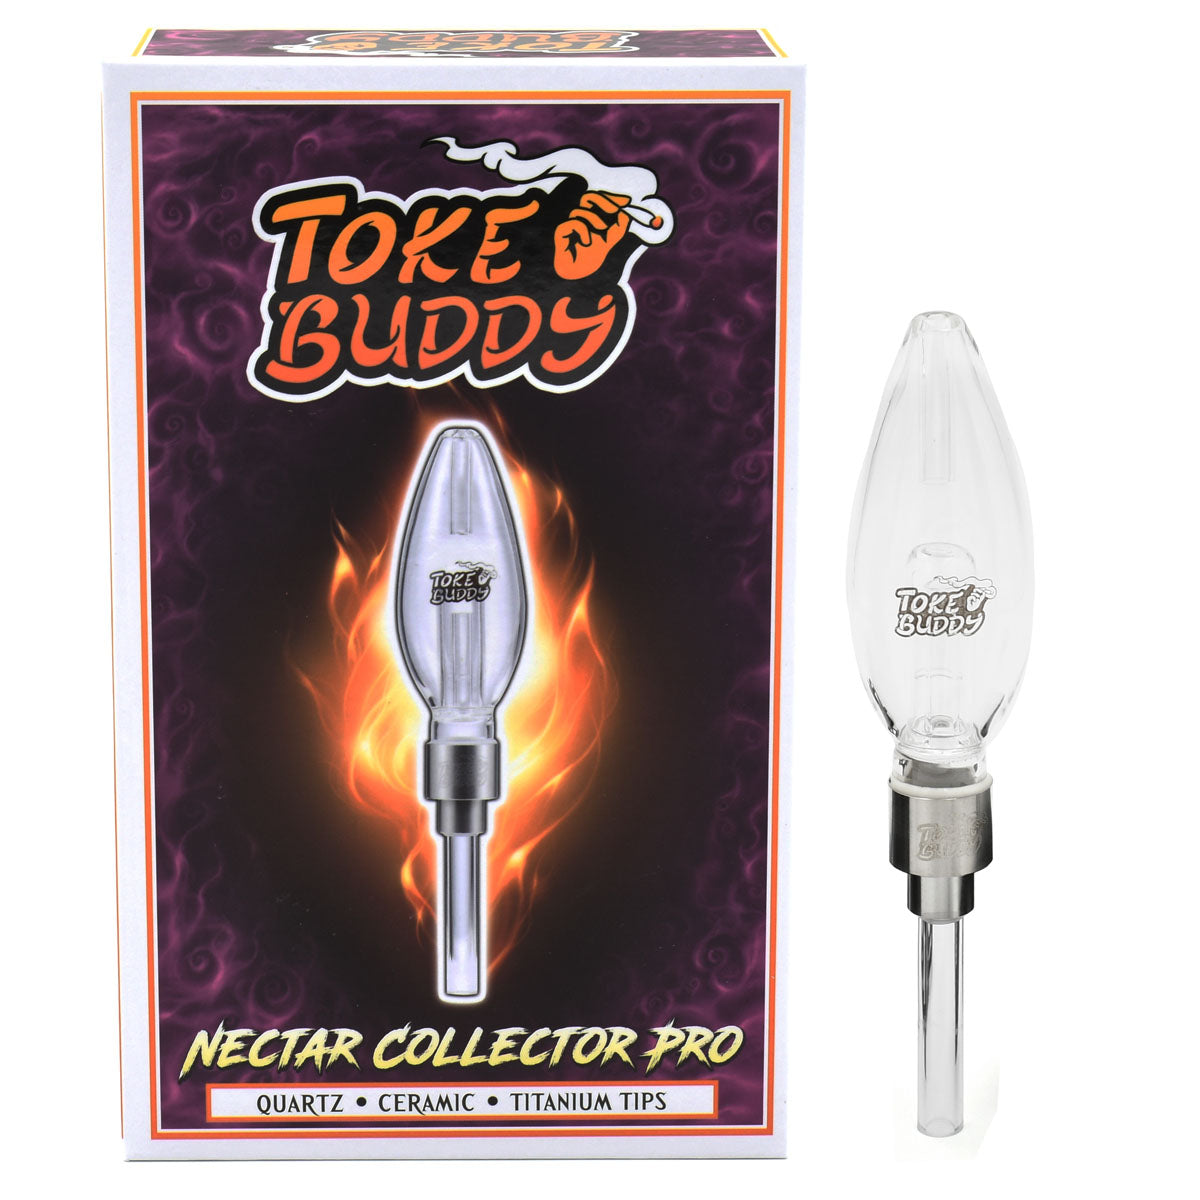 Toke Buddy Nectar Collector PRO – VapeBatt